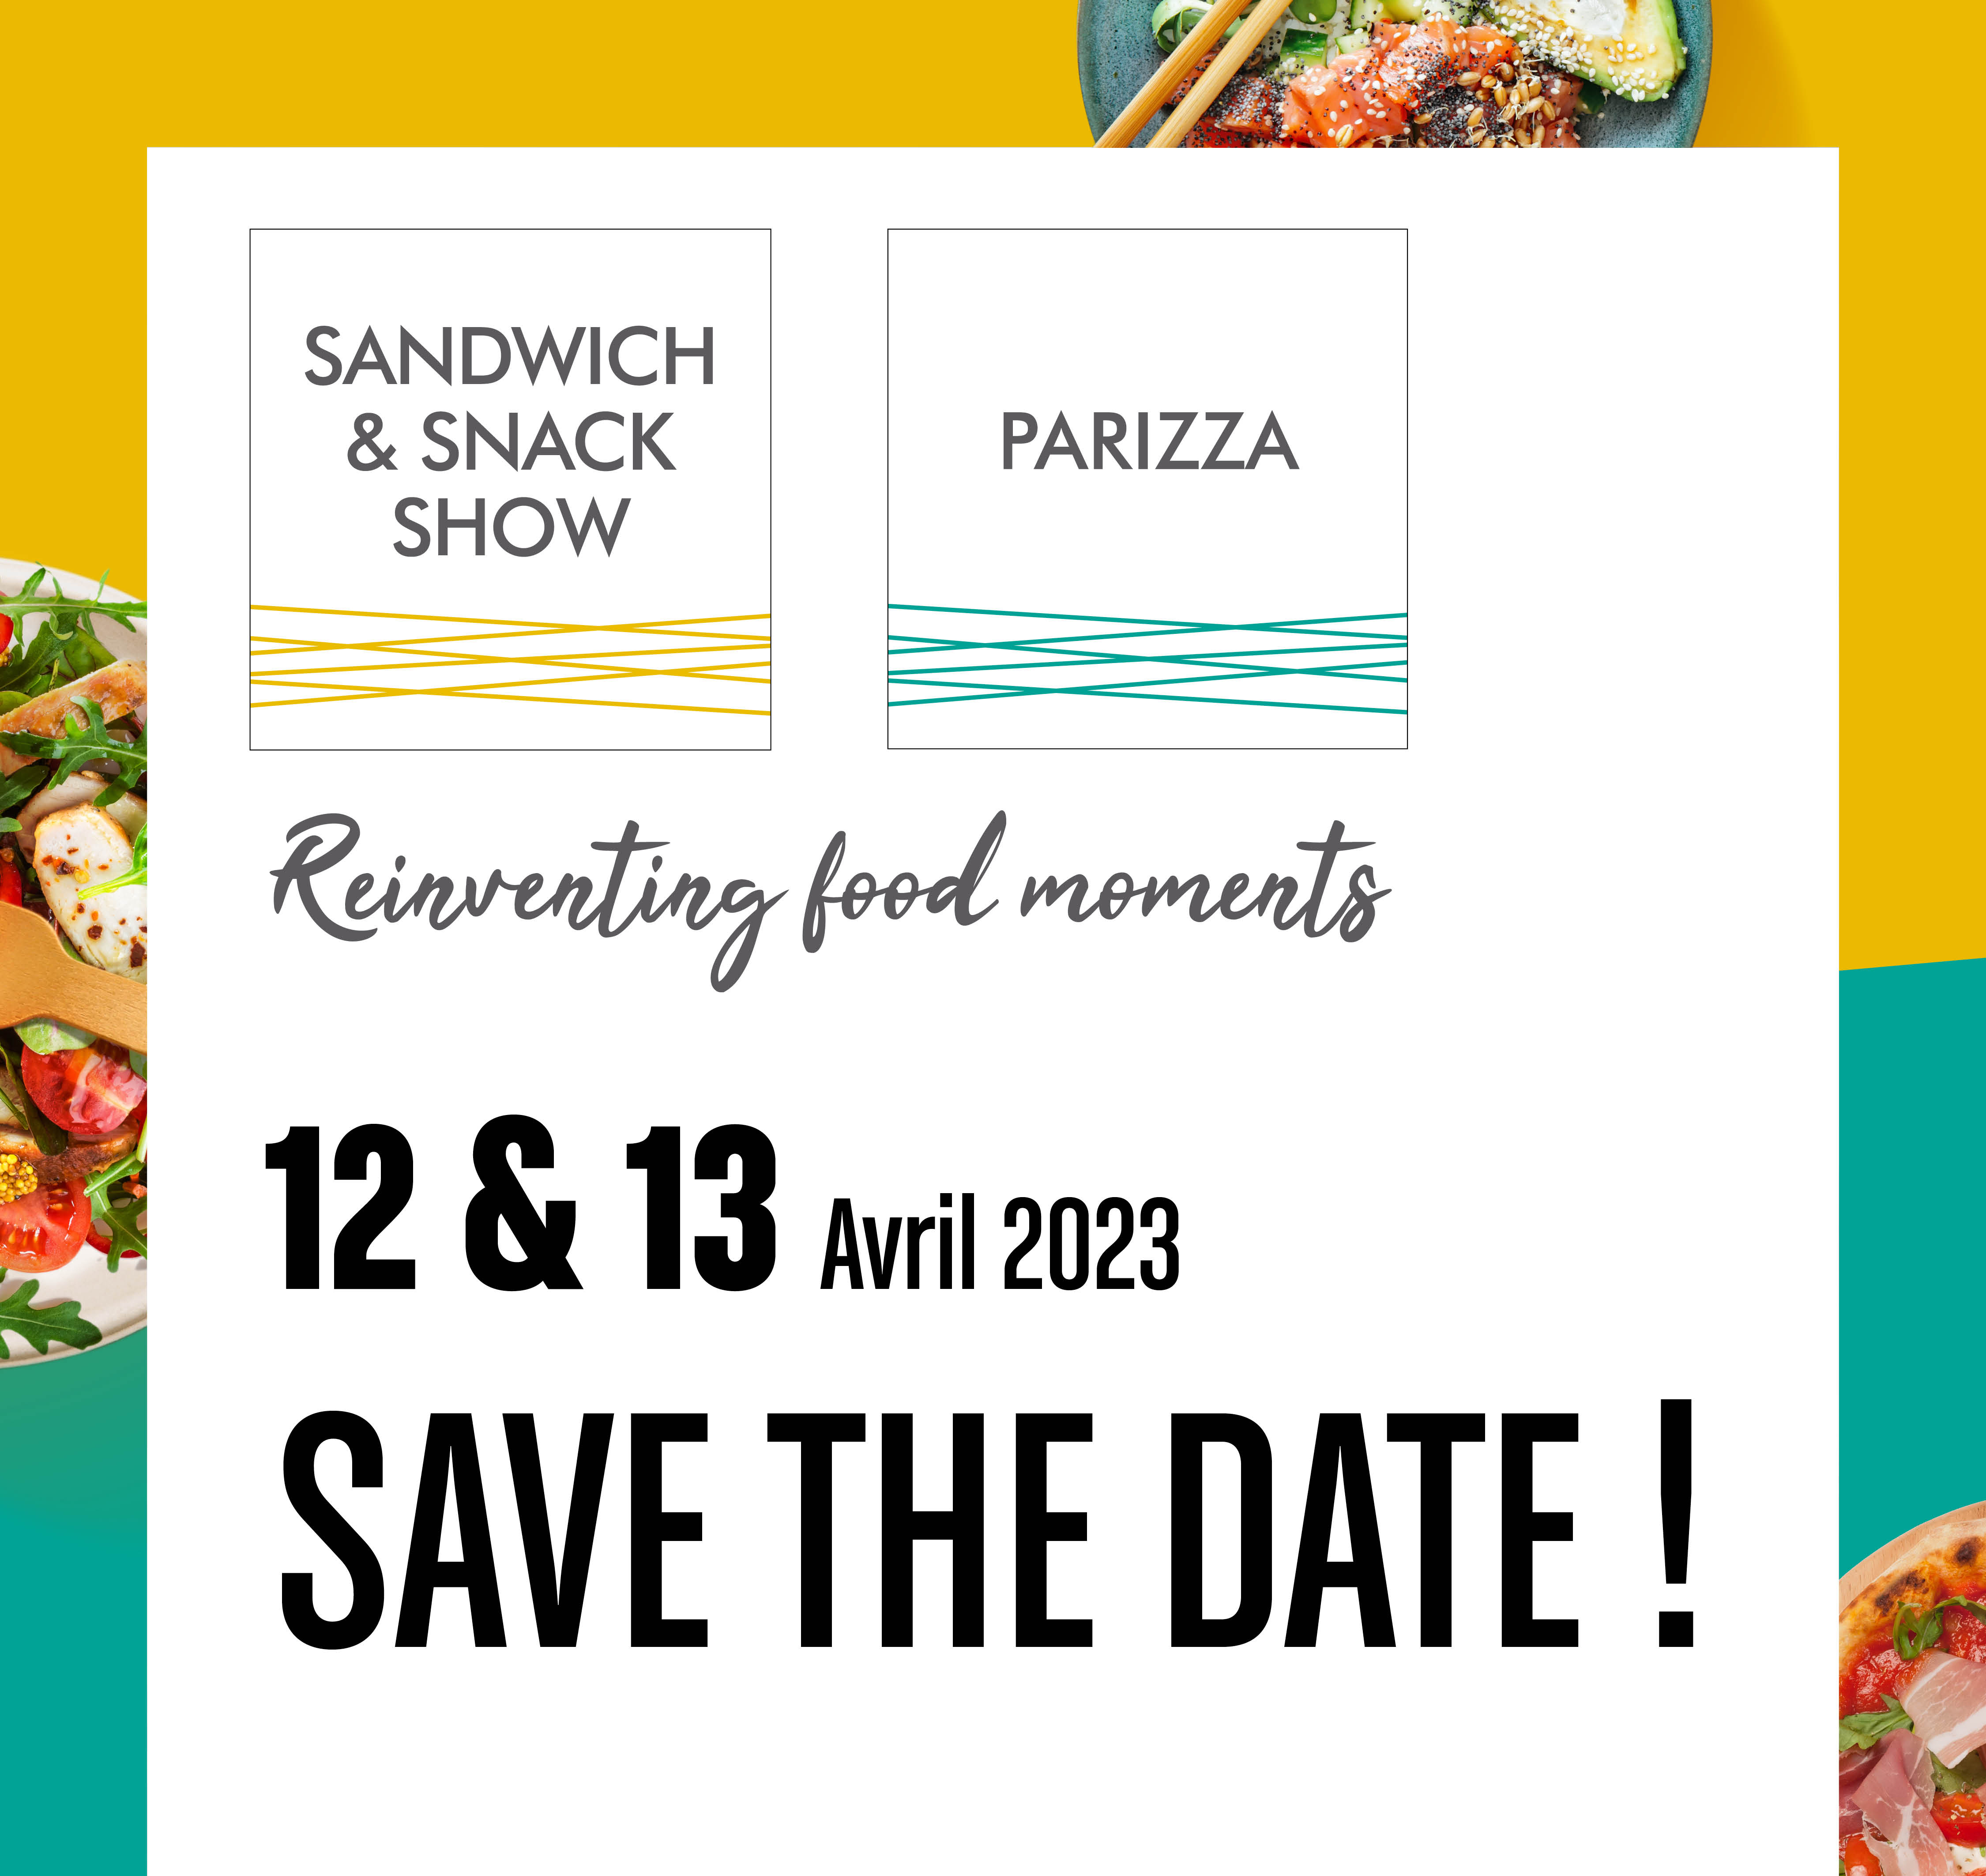 RDV au salon du Sandwich, Paris Porte de Versailles du 12 au 13 avril 2023, Hall 7.1 Stand M13